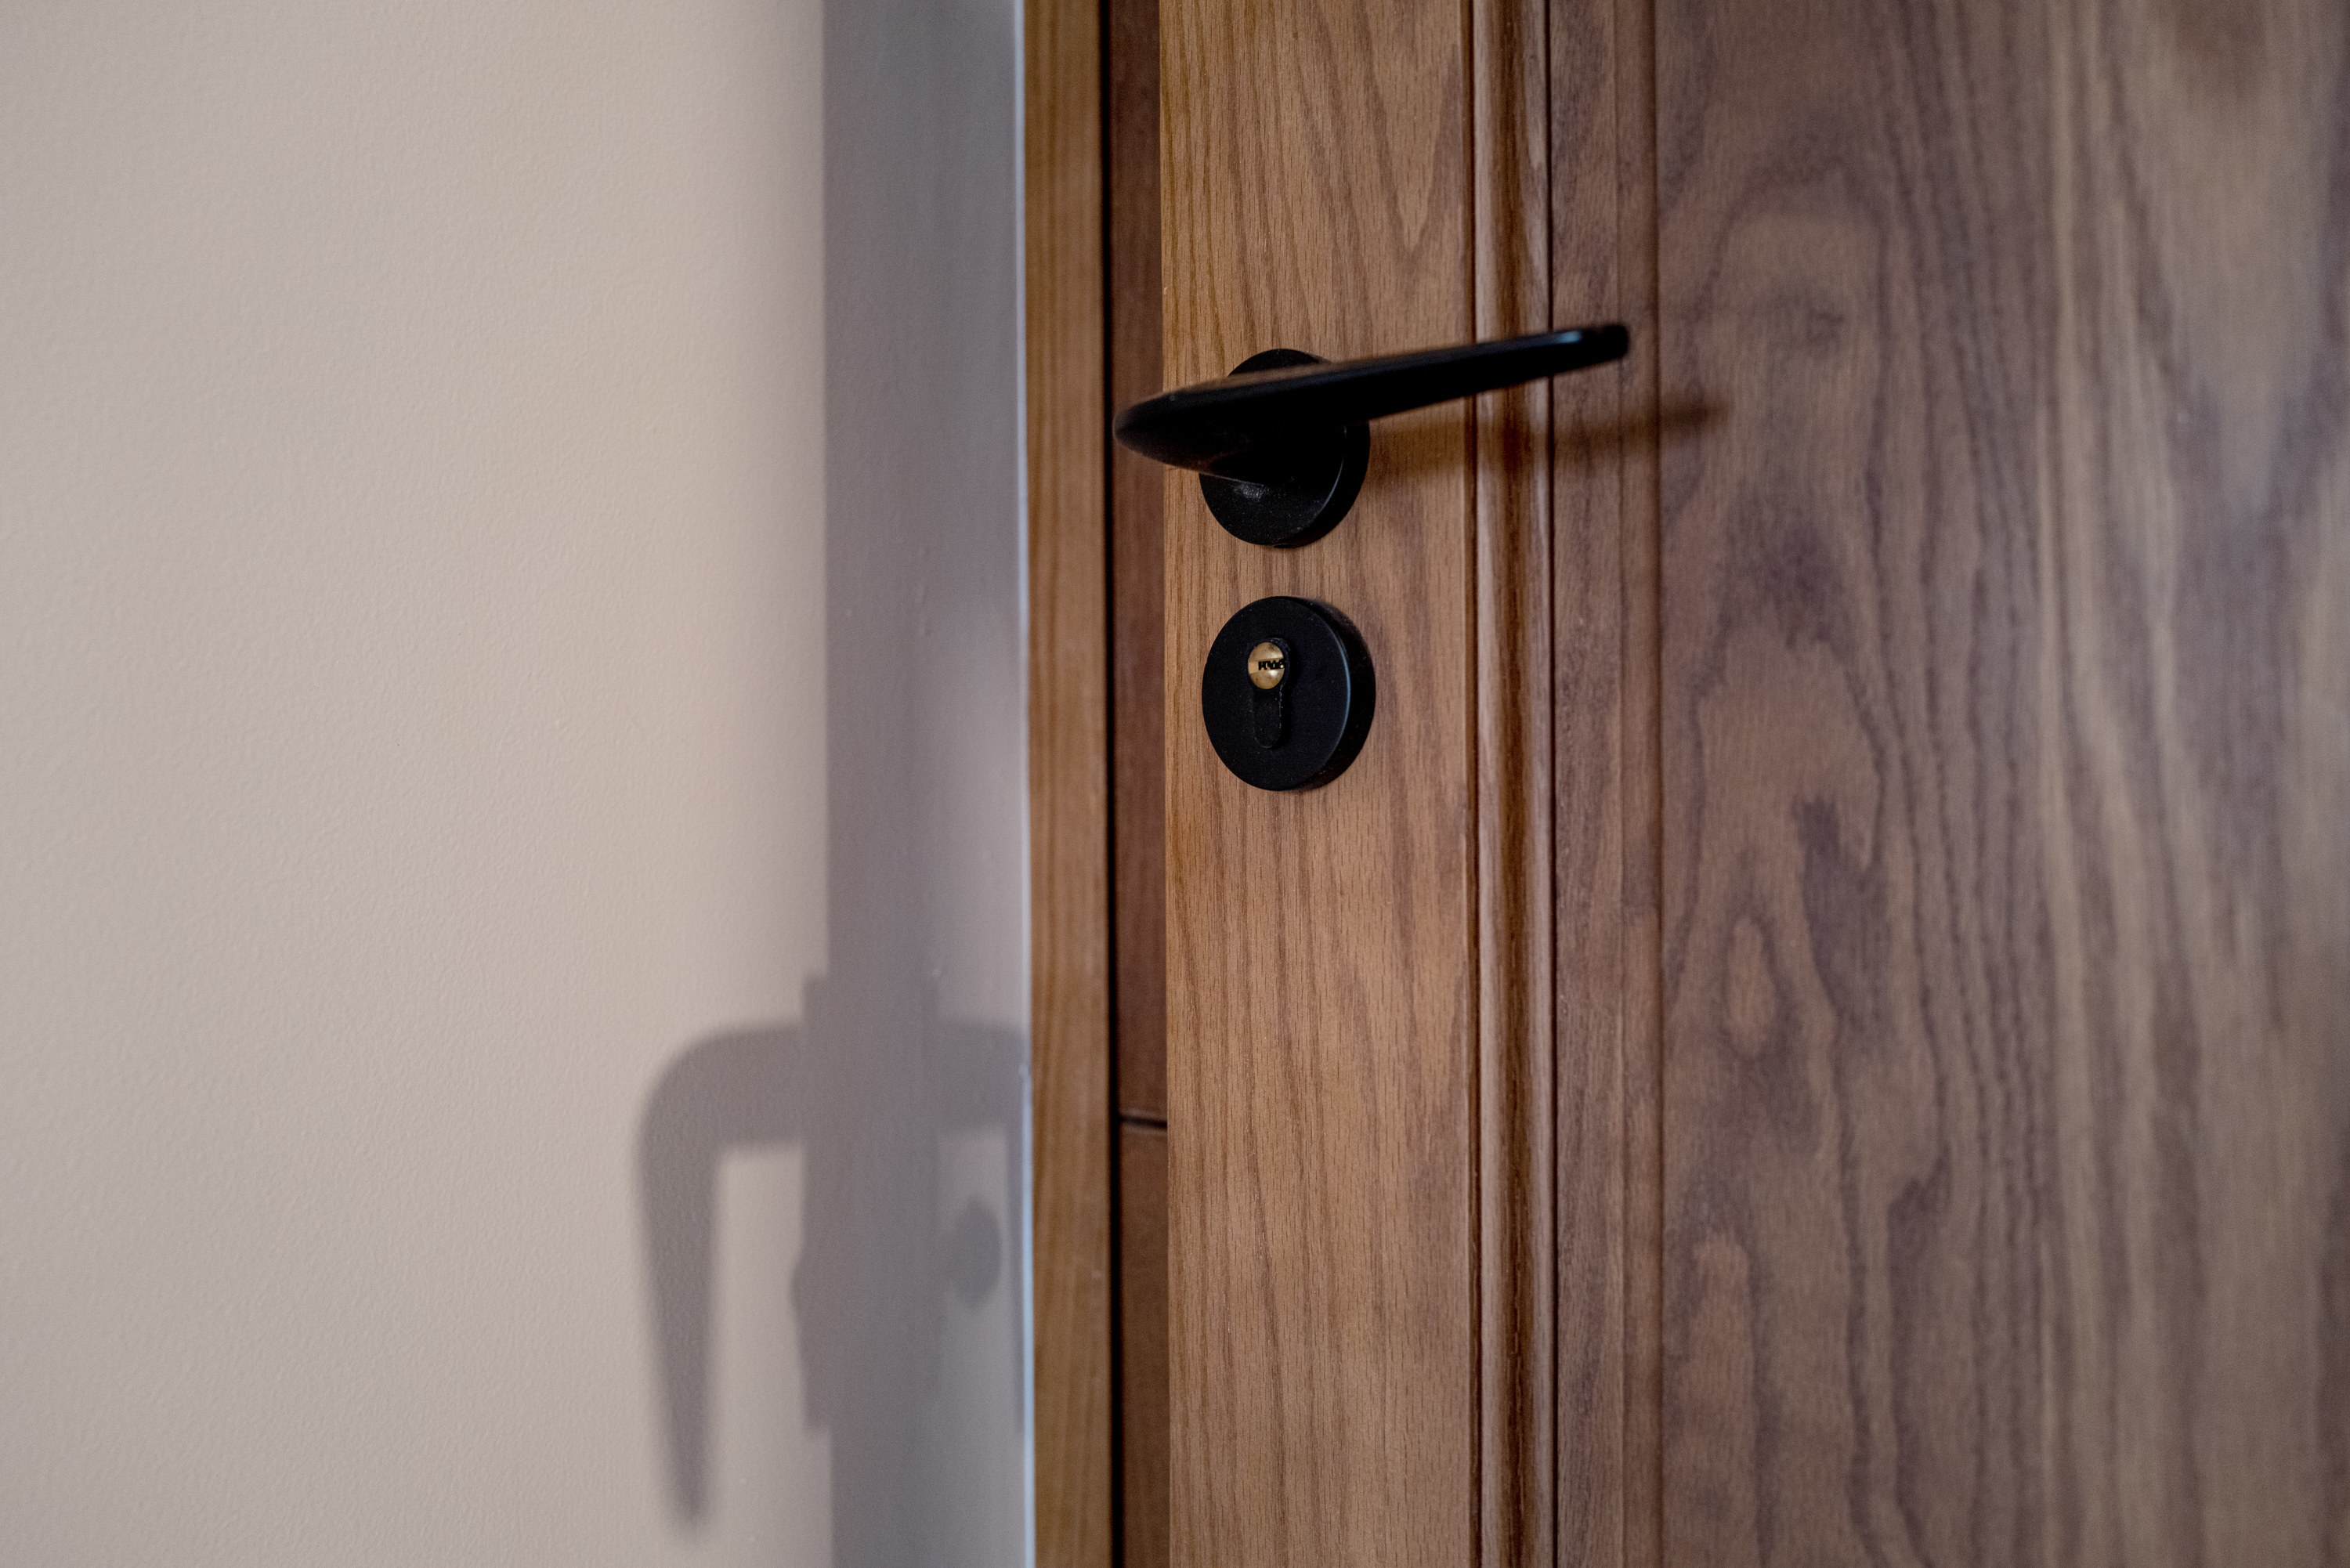 modern looking black door handle